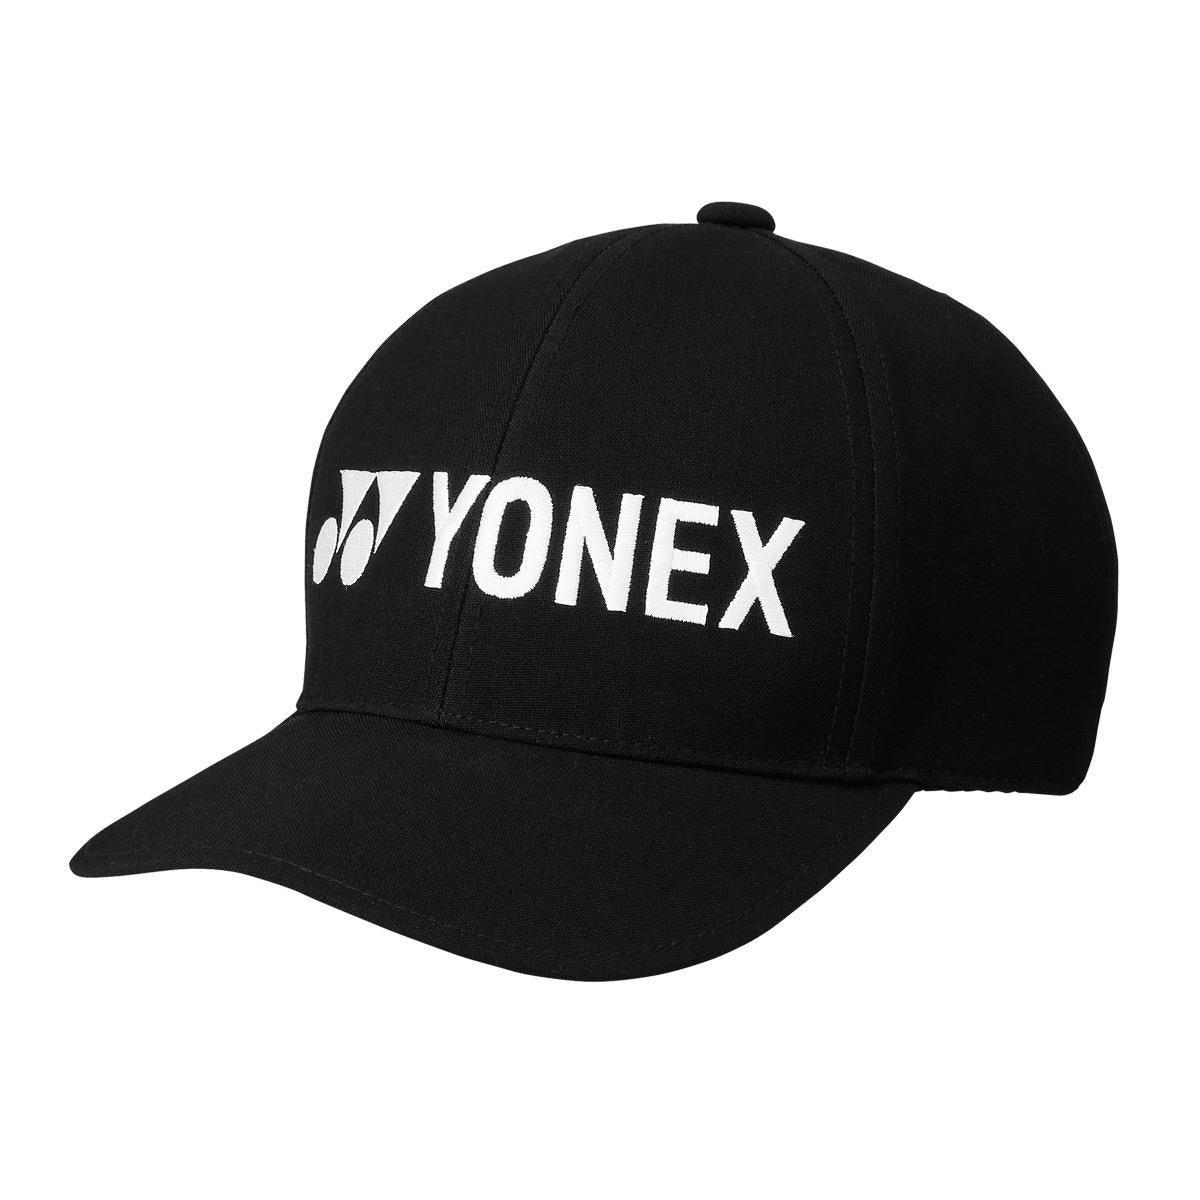 Yonex 40063 Tennis Cap - Black